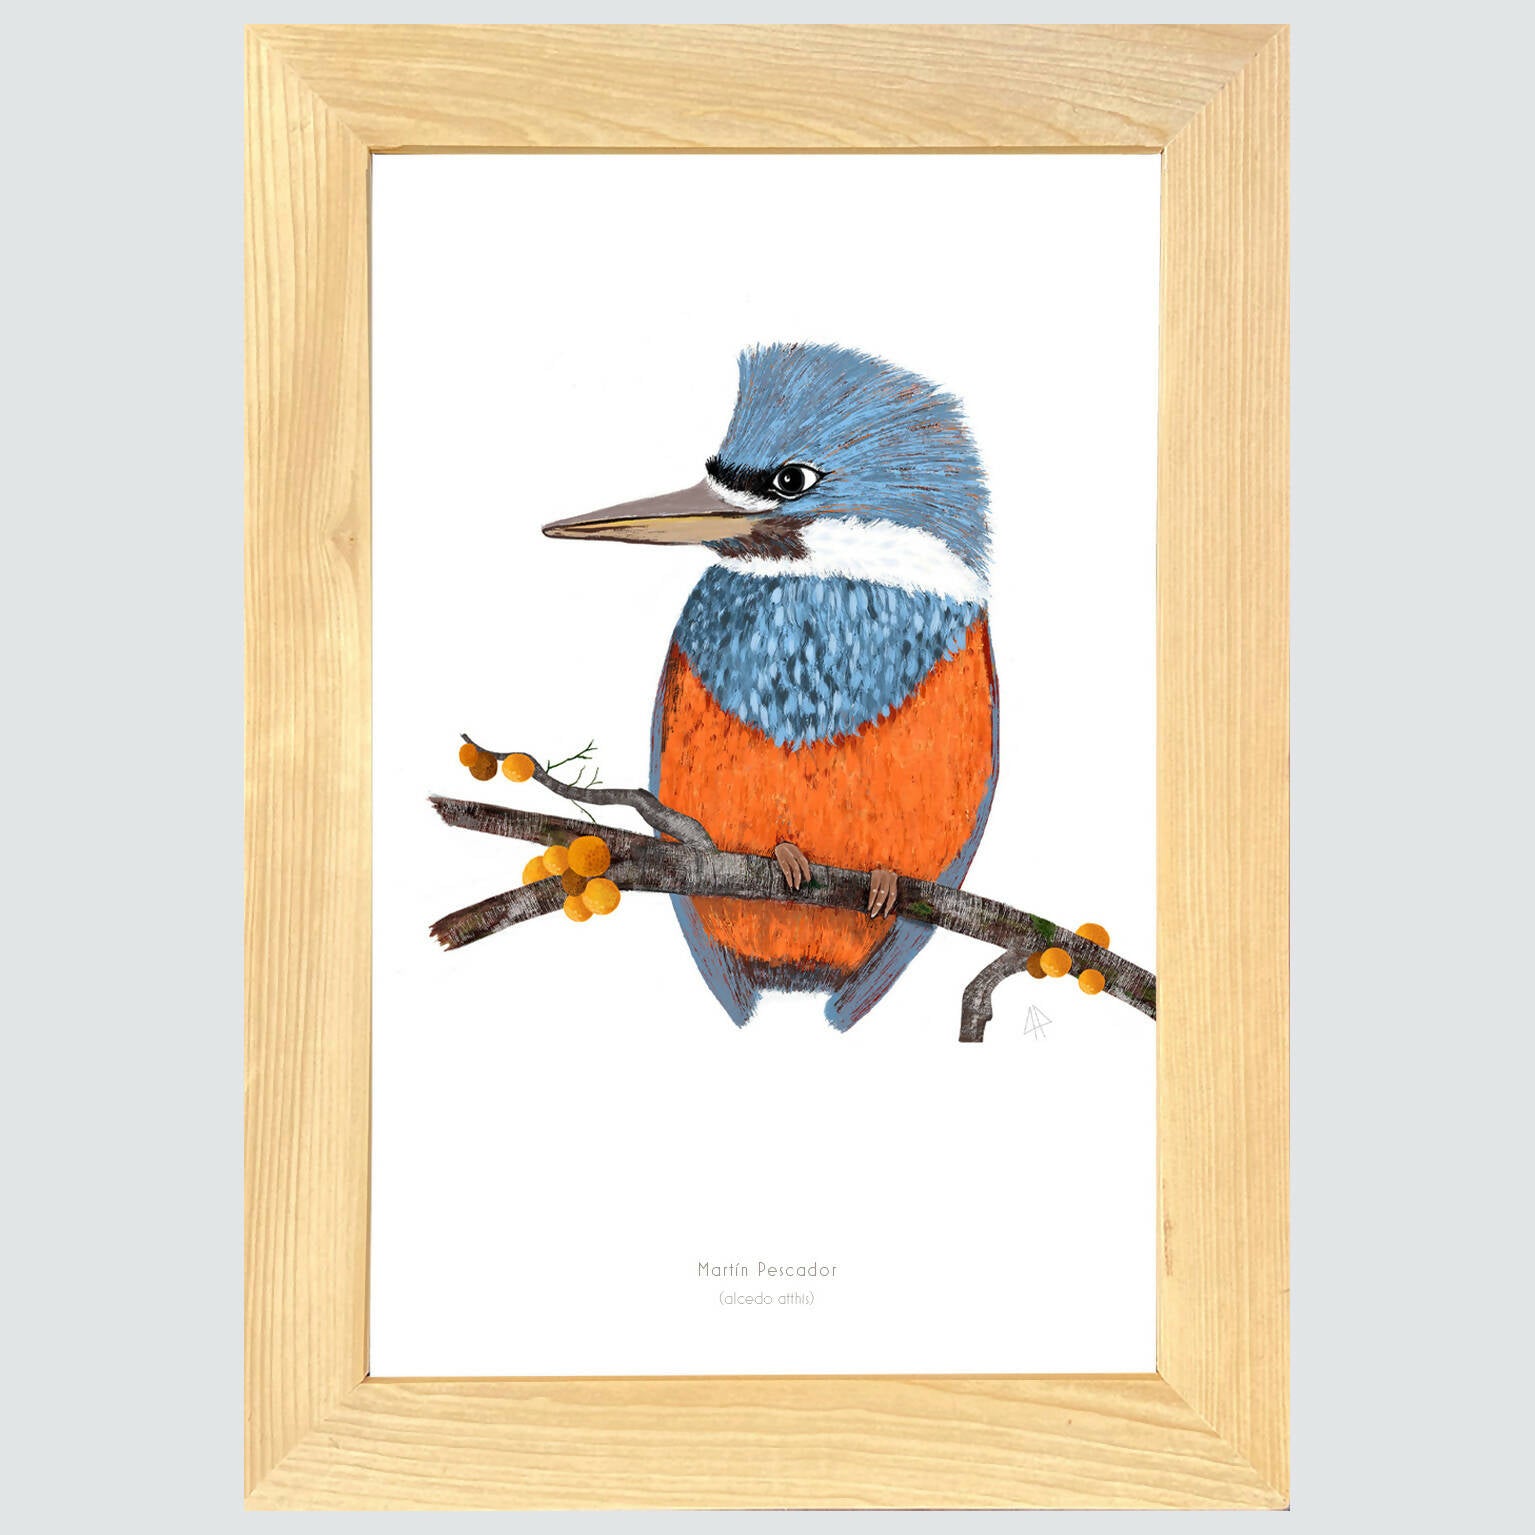 Cuadro MARTIN PESCADOR, colección aves chilenas, 20x30cm